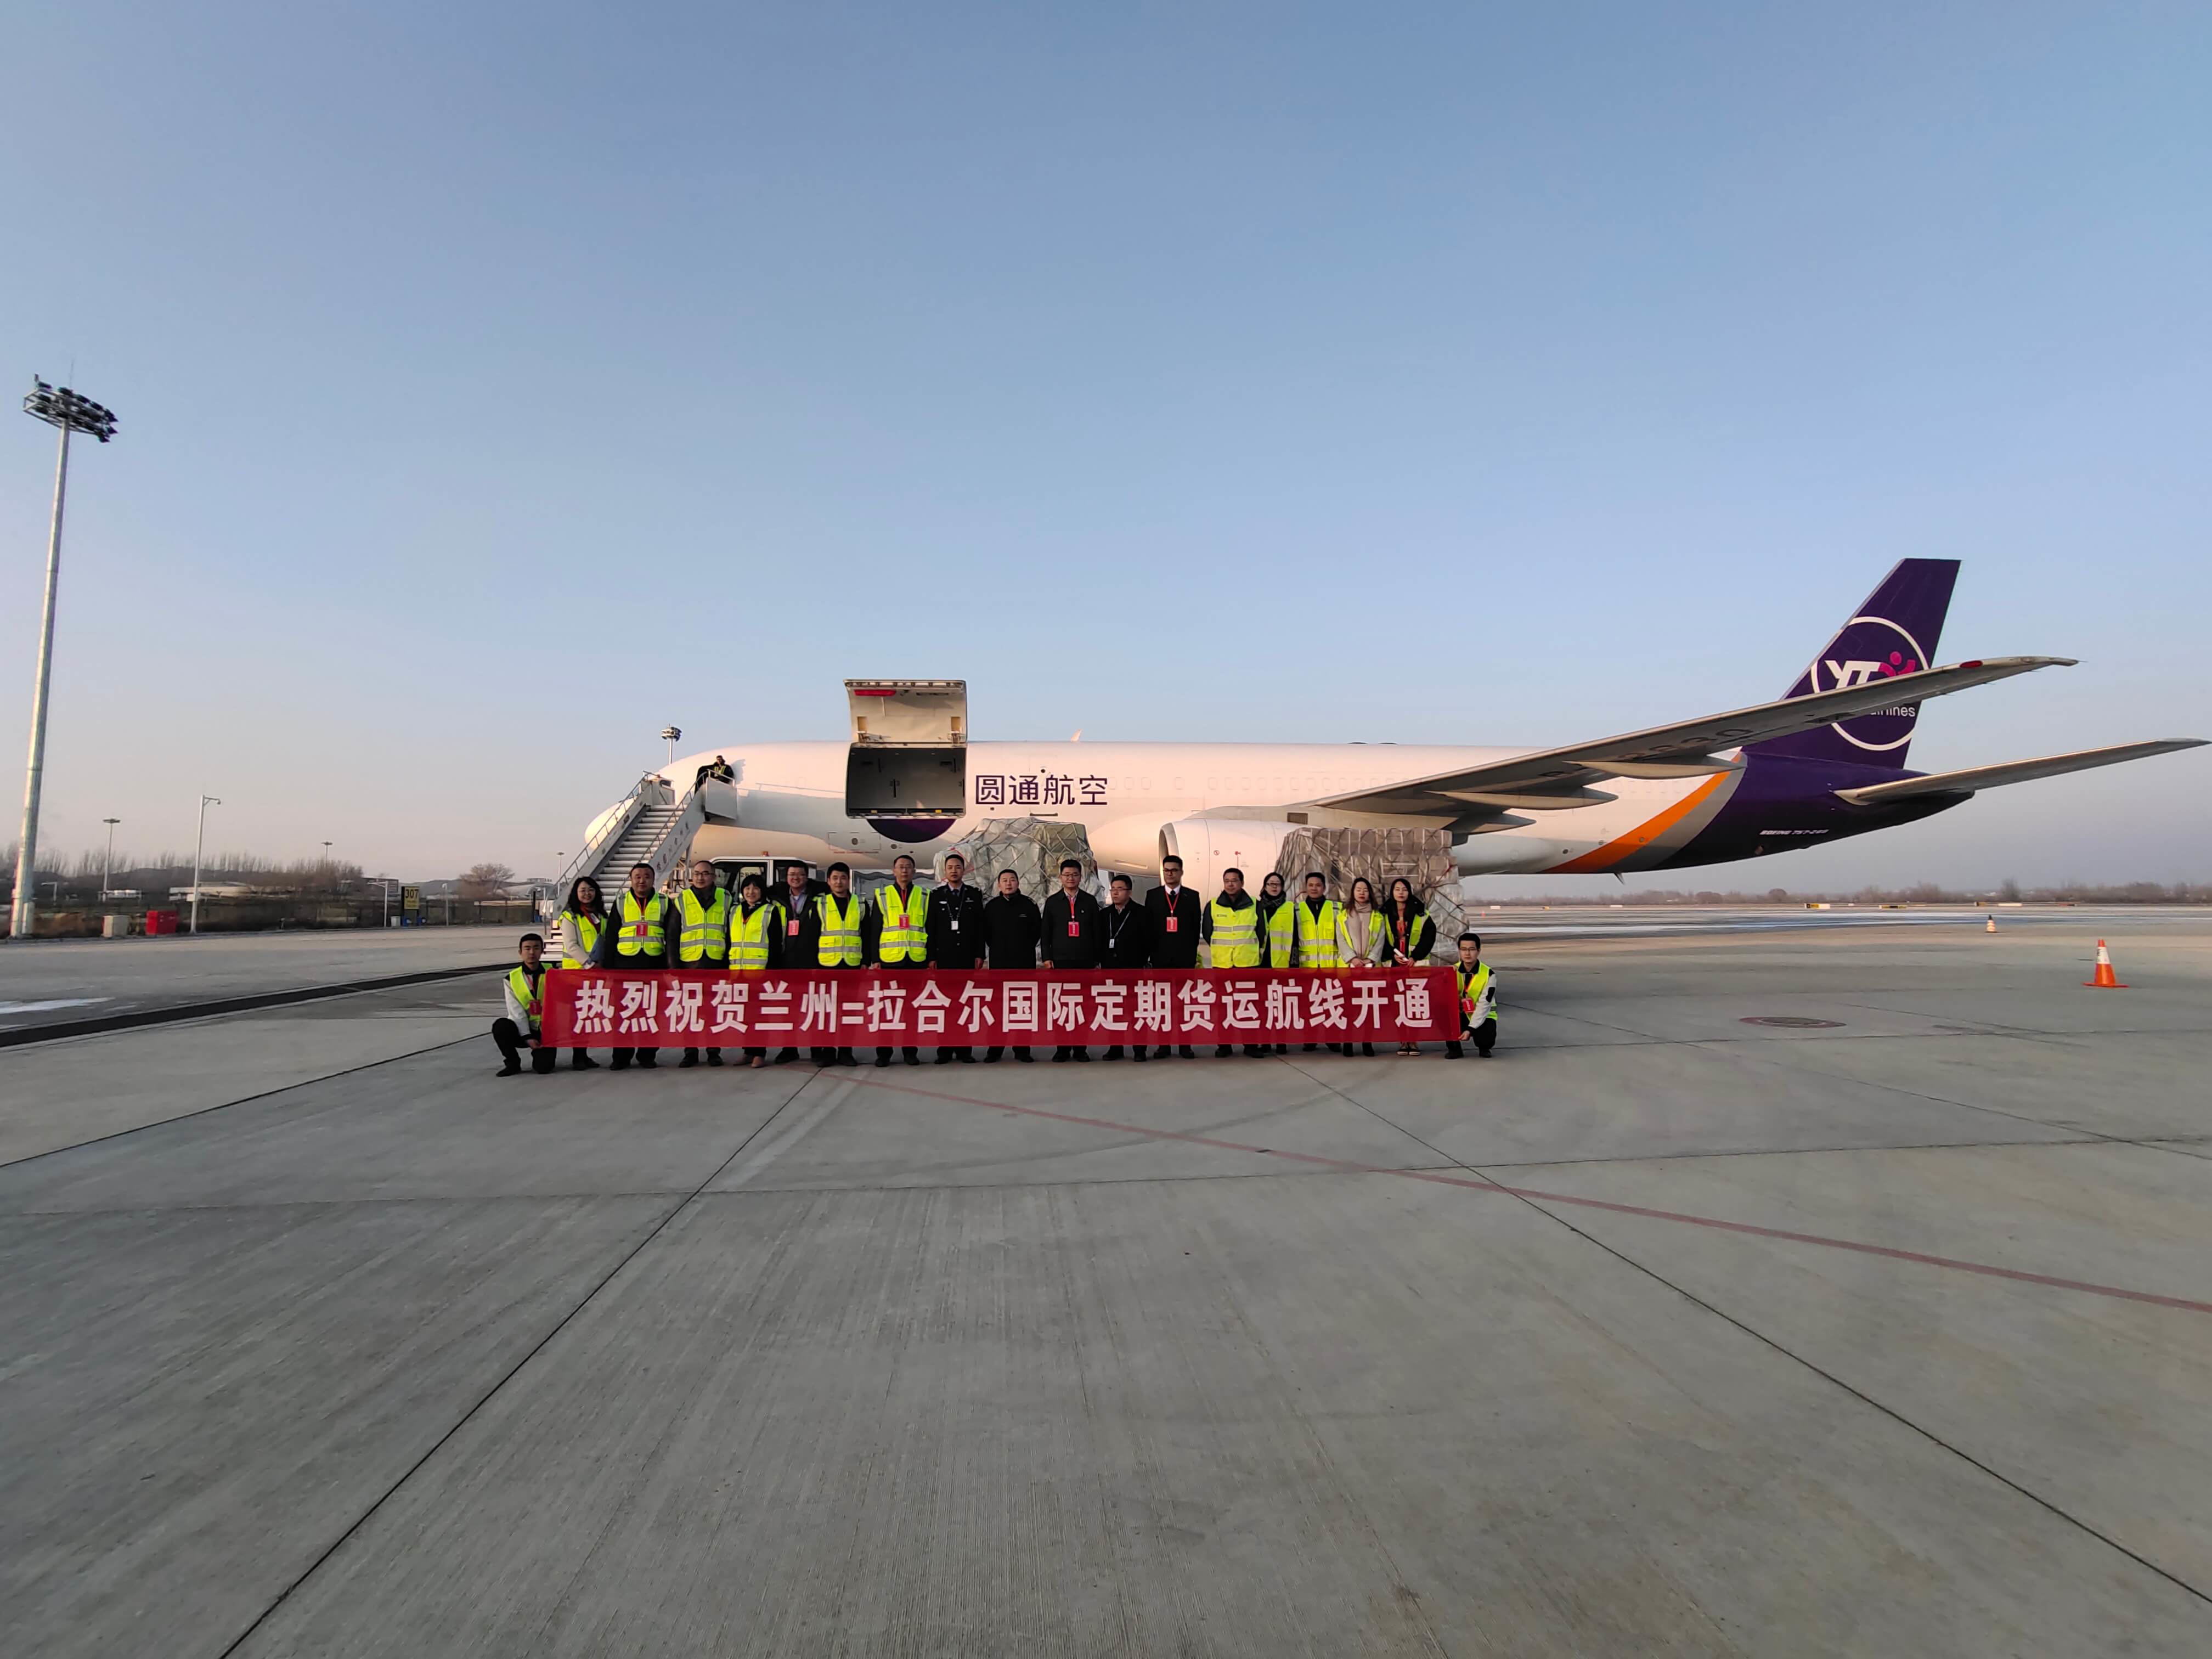 2019年12月3日中国兰州至巴基斯坦拉合尔全货机定期航班成功首航